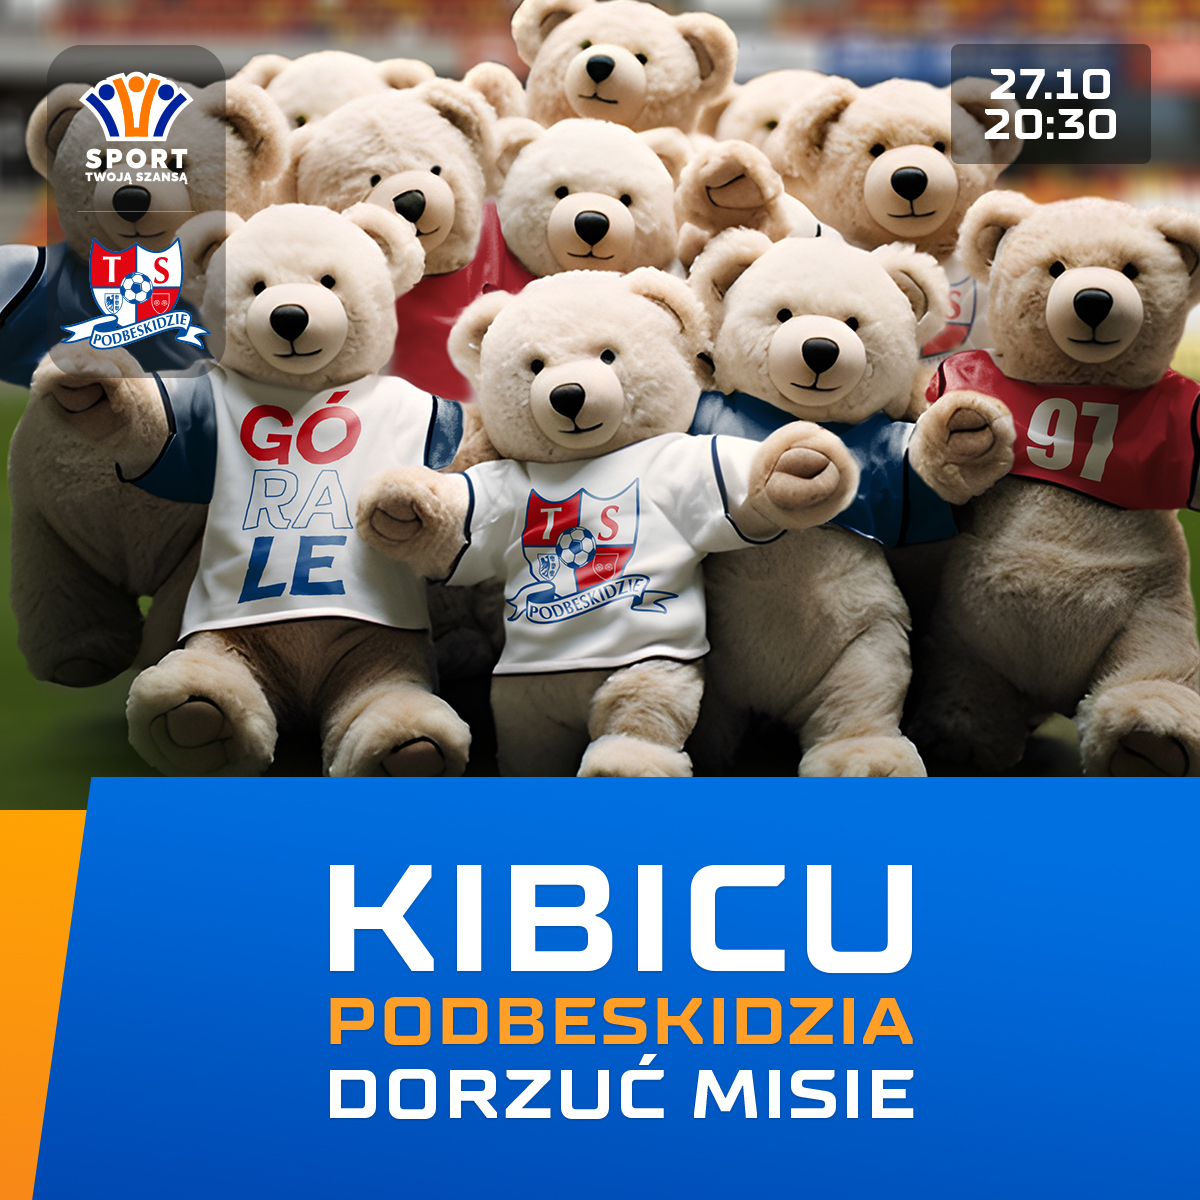 Akcja „Dorzuć misie” na stadionie Podbeskidzia! Pluszaki wylądują na murawie podczas meczu z Wisłą Kraków!